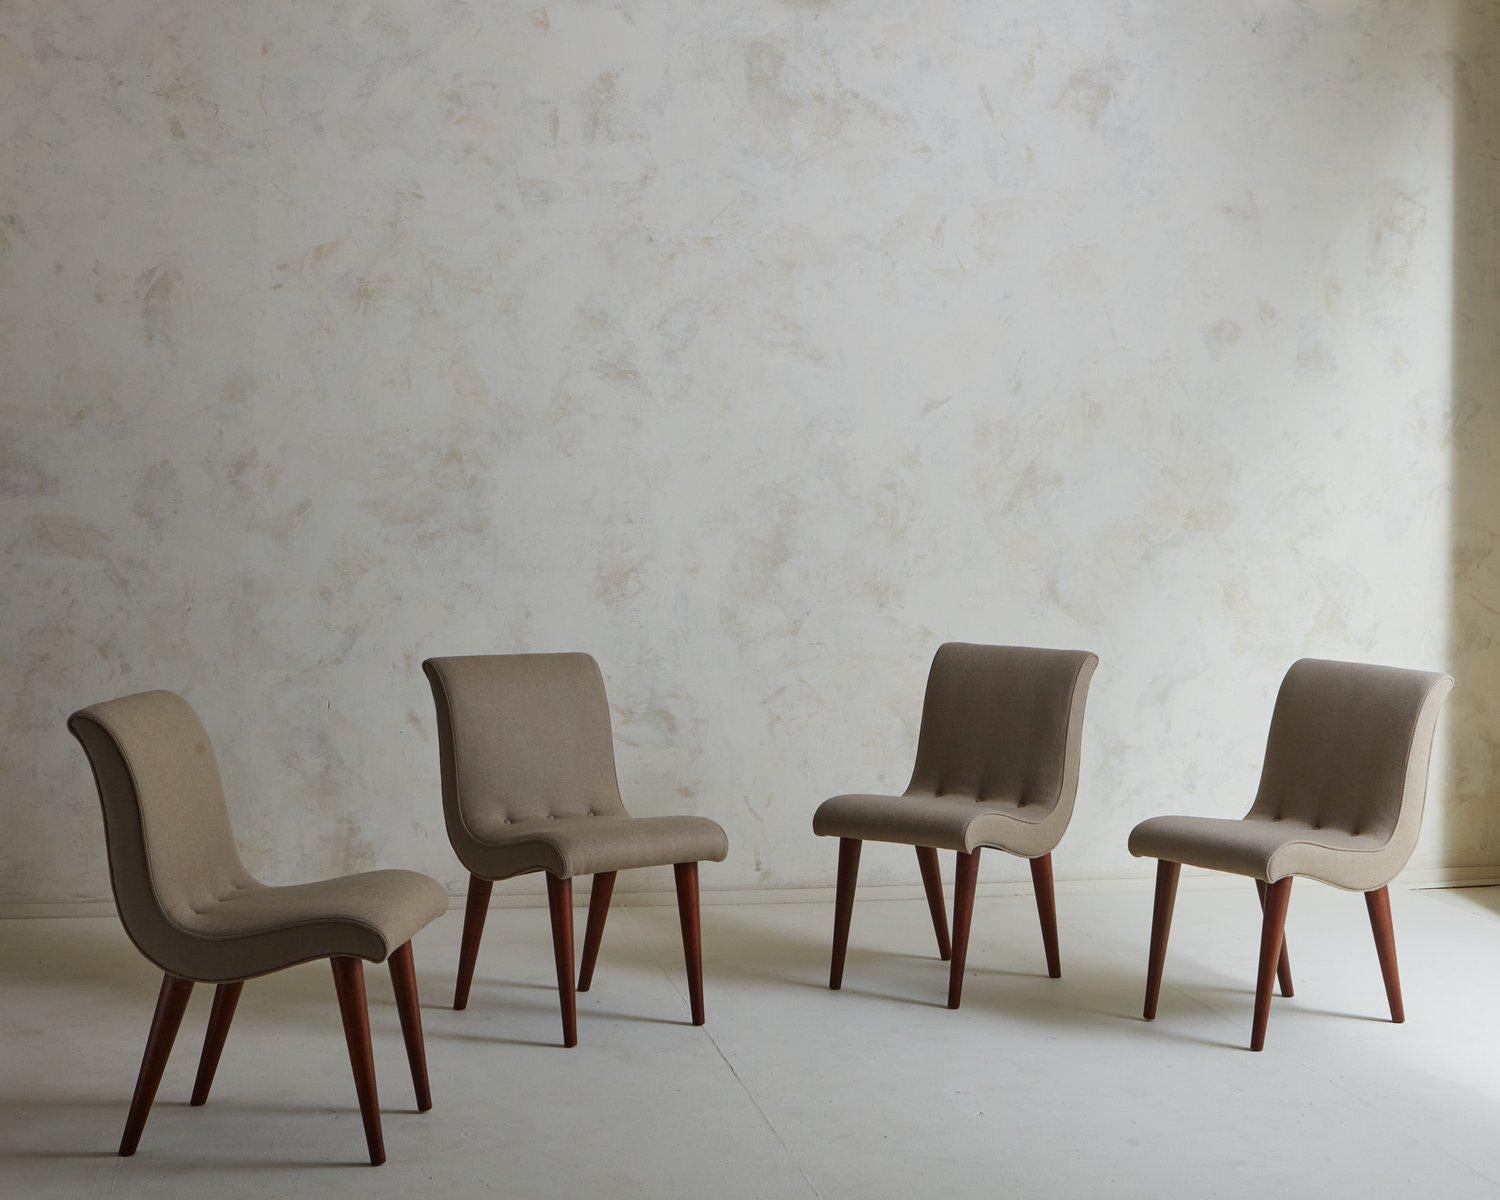 Ensemble de 4 chaises de salle à manger Art déco conçues par Russel Wright pour Conant Ball dans les années 1940. Ces chaises sont dotées d'un cadre stylisé et curviligne avec un dossier à boutons. Ils reposent sur des pieds angulaires et effilés en